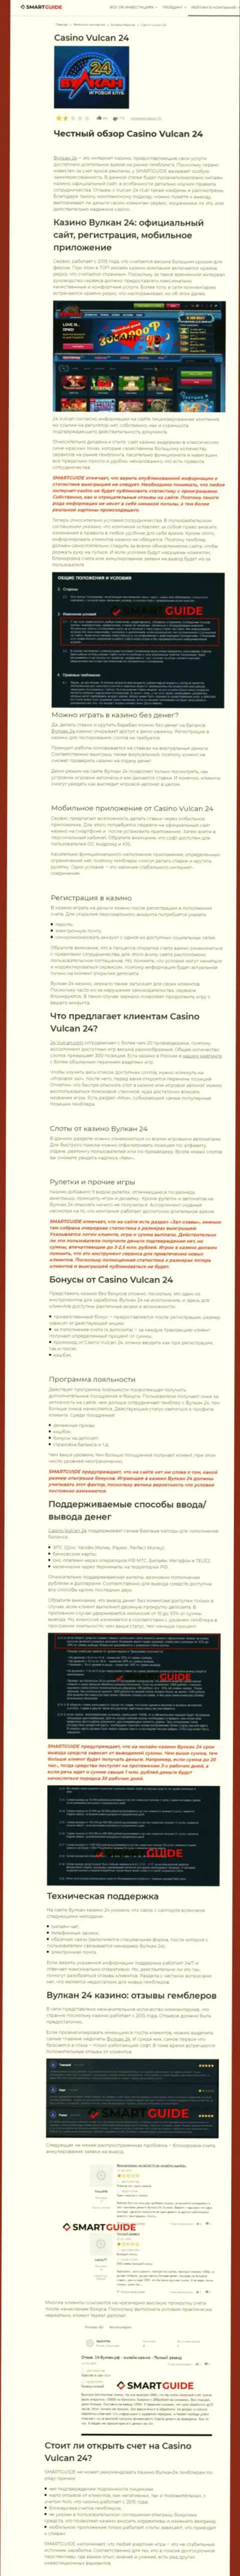 Вулкан 24 - это компания, которая зарабатывает на отжатии депозитов своих реальных клиентов (обзор манипуляций)